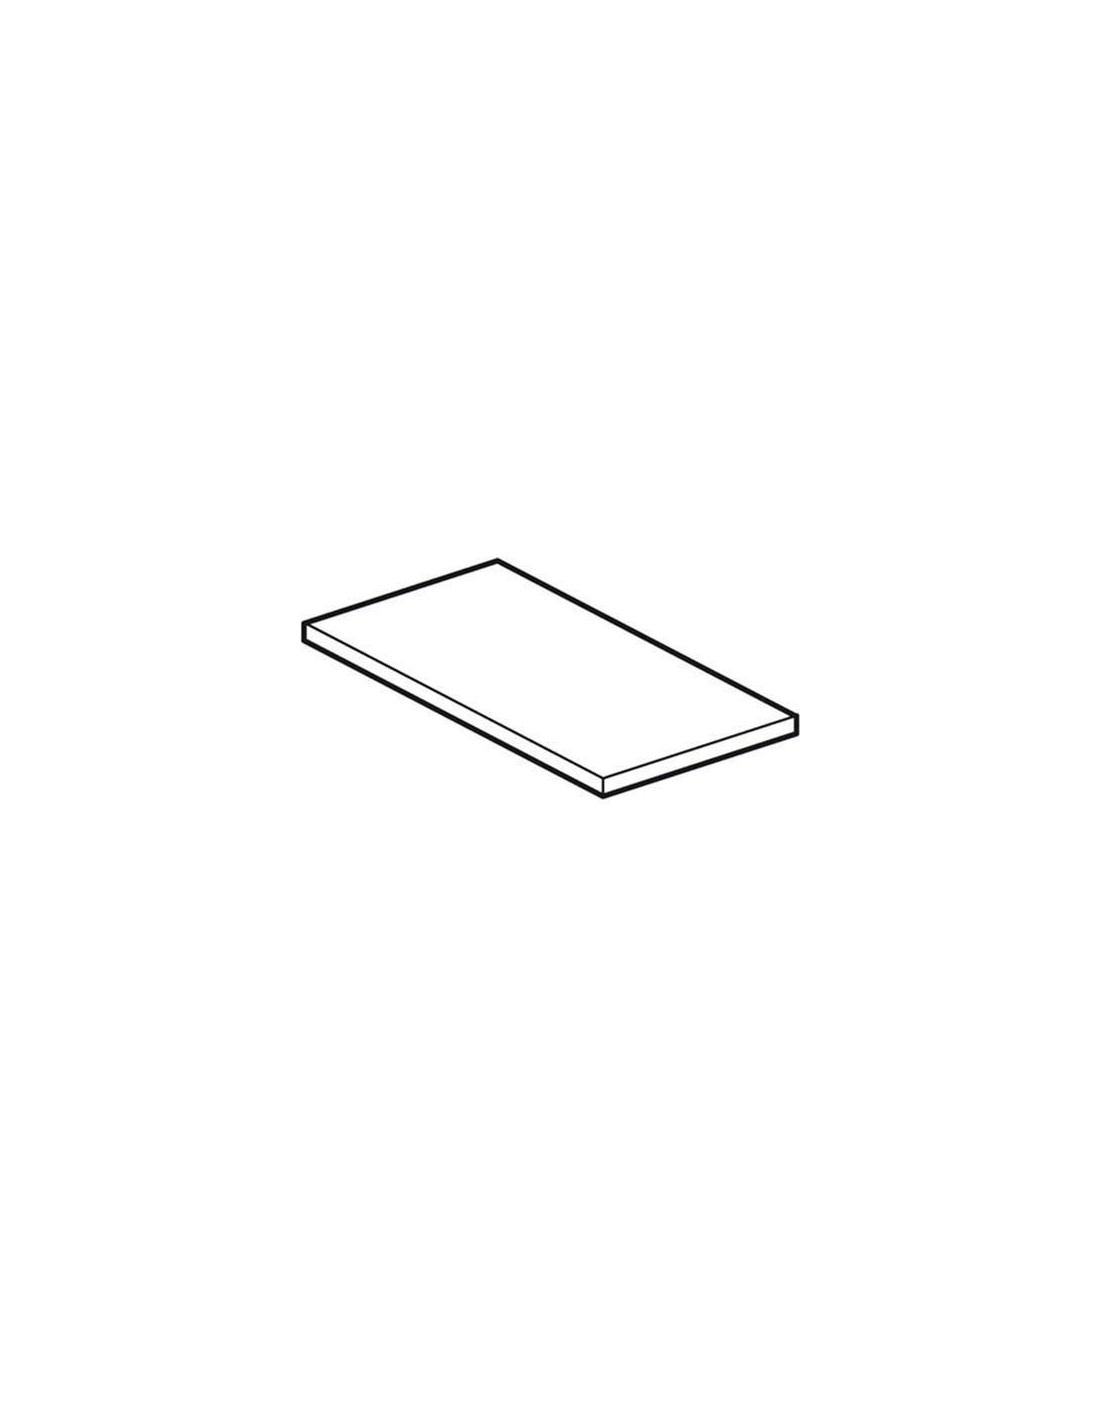 Tablero de corte plástico - Dimensiones cm 79 x 75 x 2,5